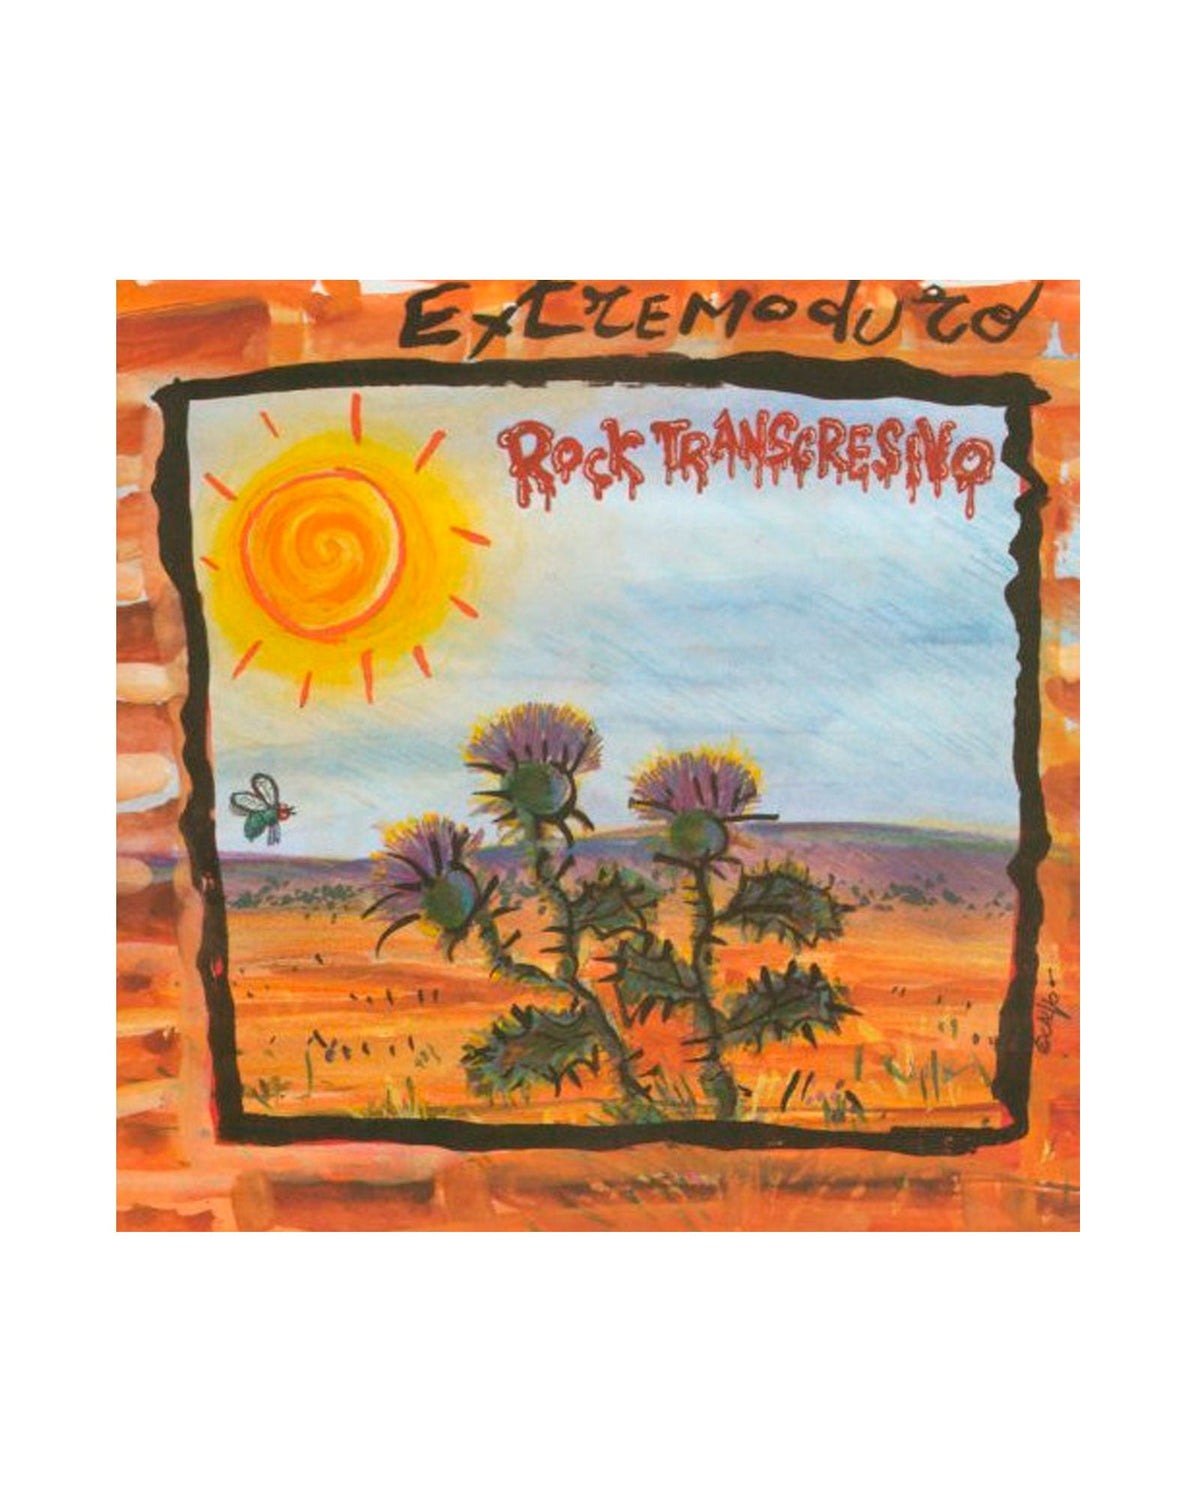 Extremoduro Vinilo-LP + CD "Rock Transgresivo" - Rocktud - Rocktud